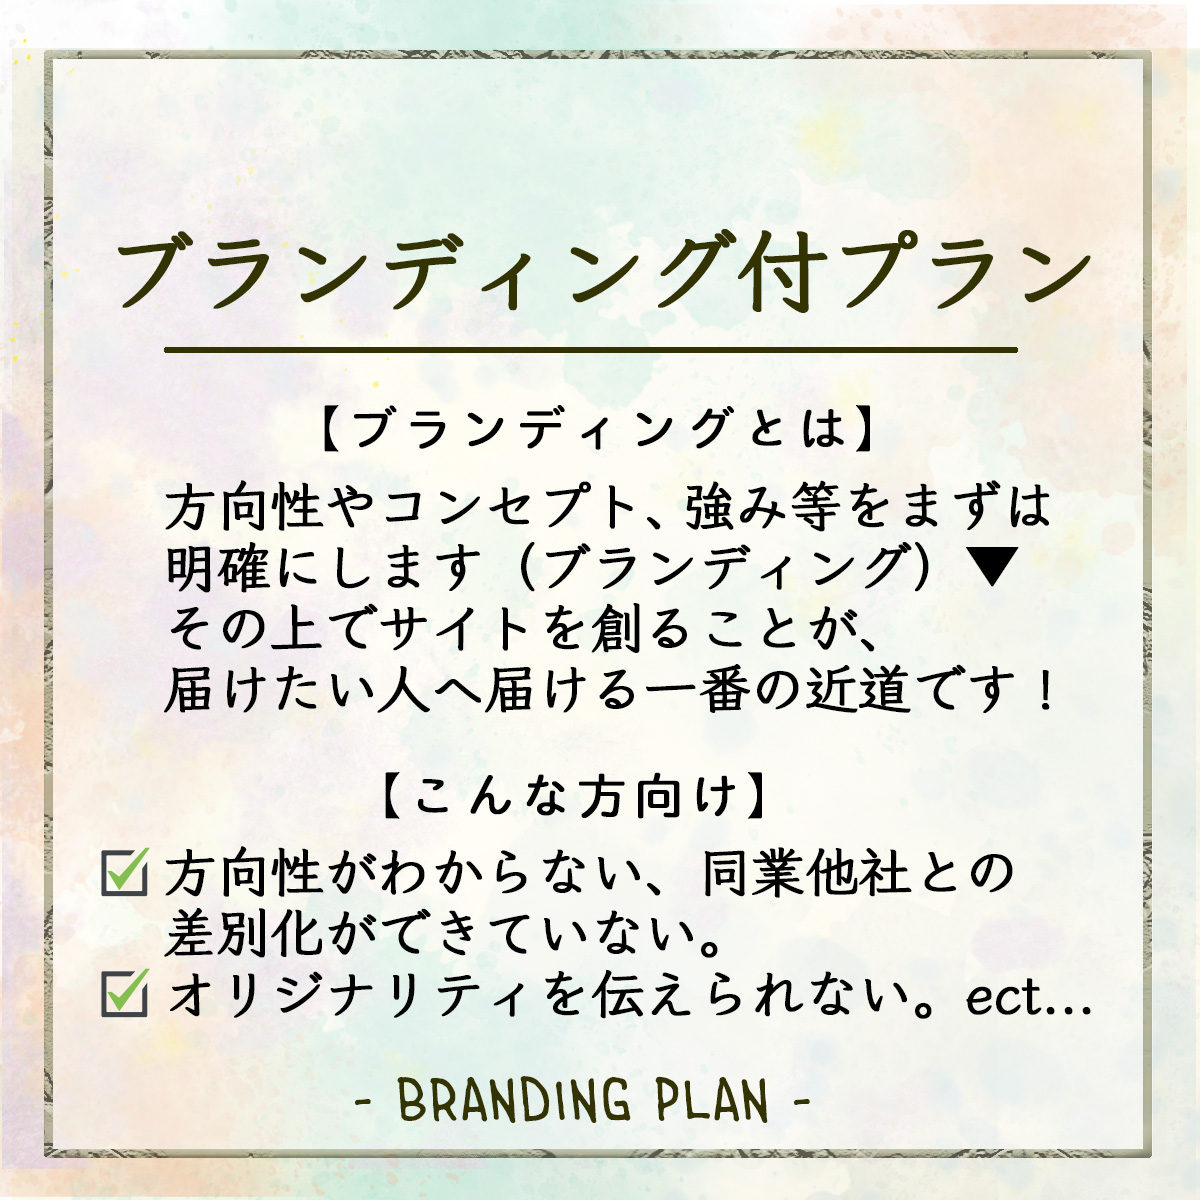 brandingplan3